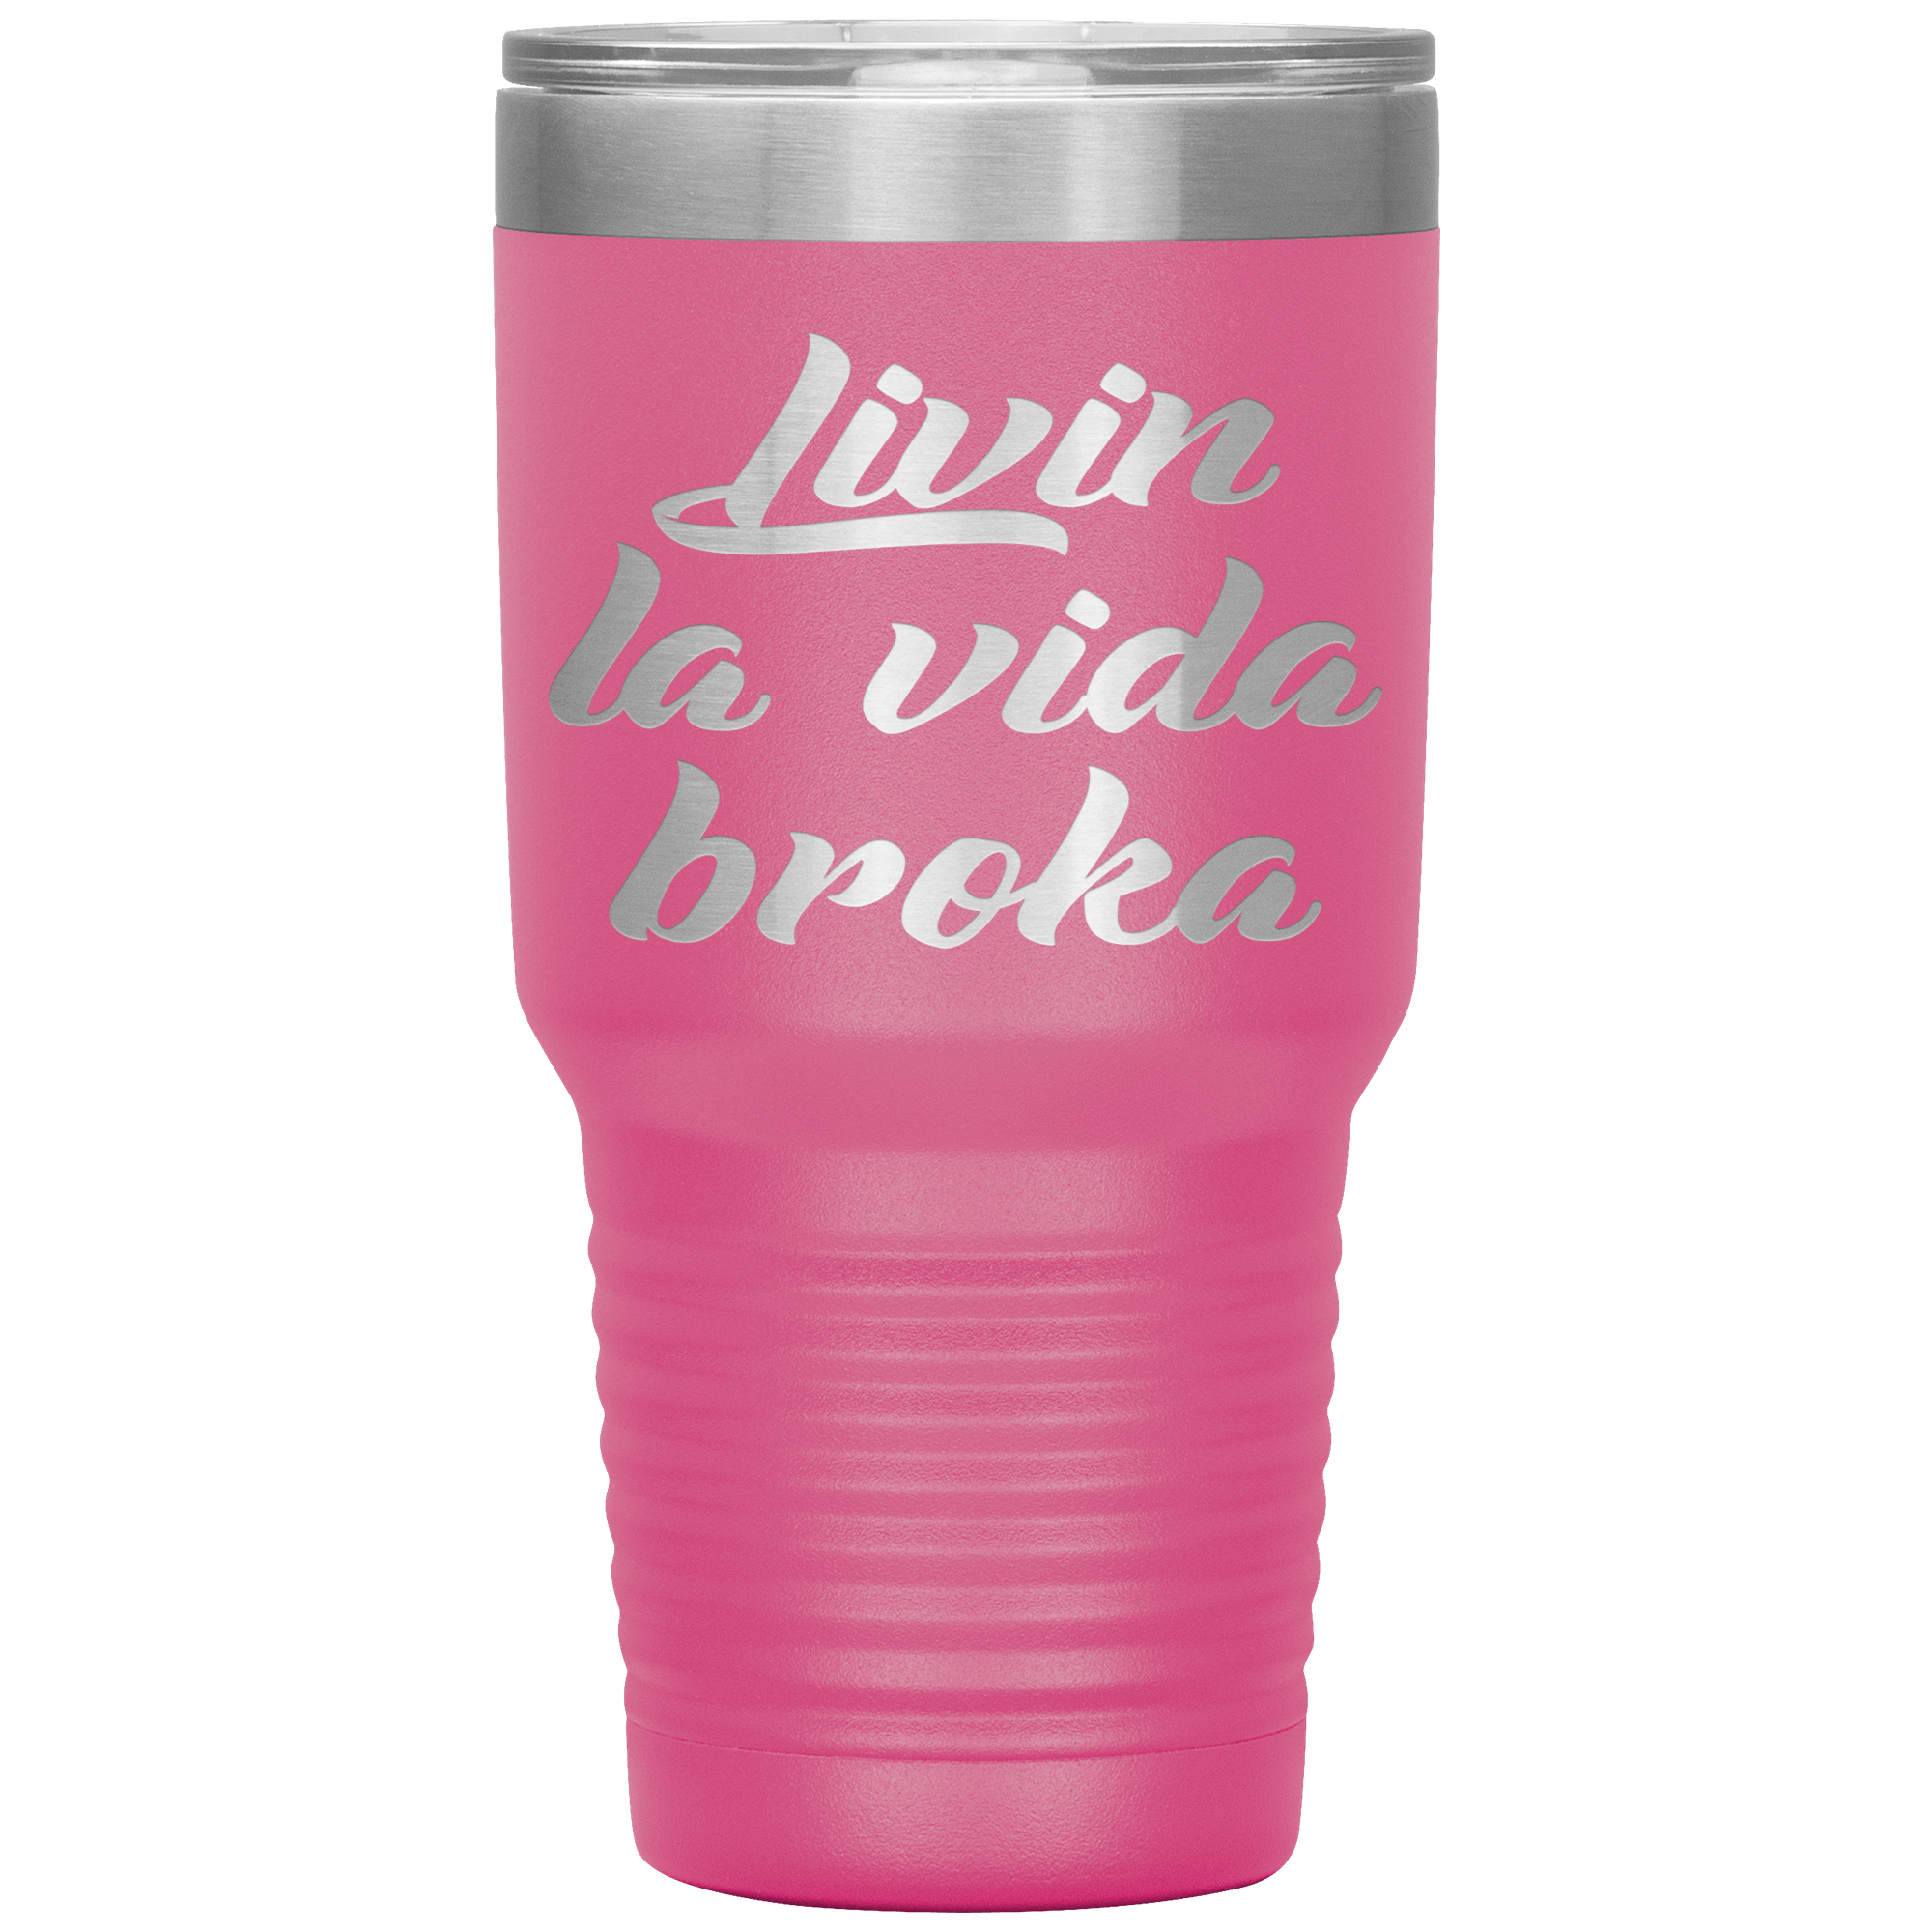 " LIVIN LA VIDA BROKA " TUMBLER